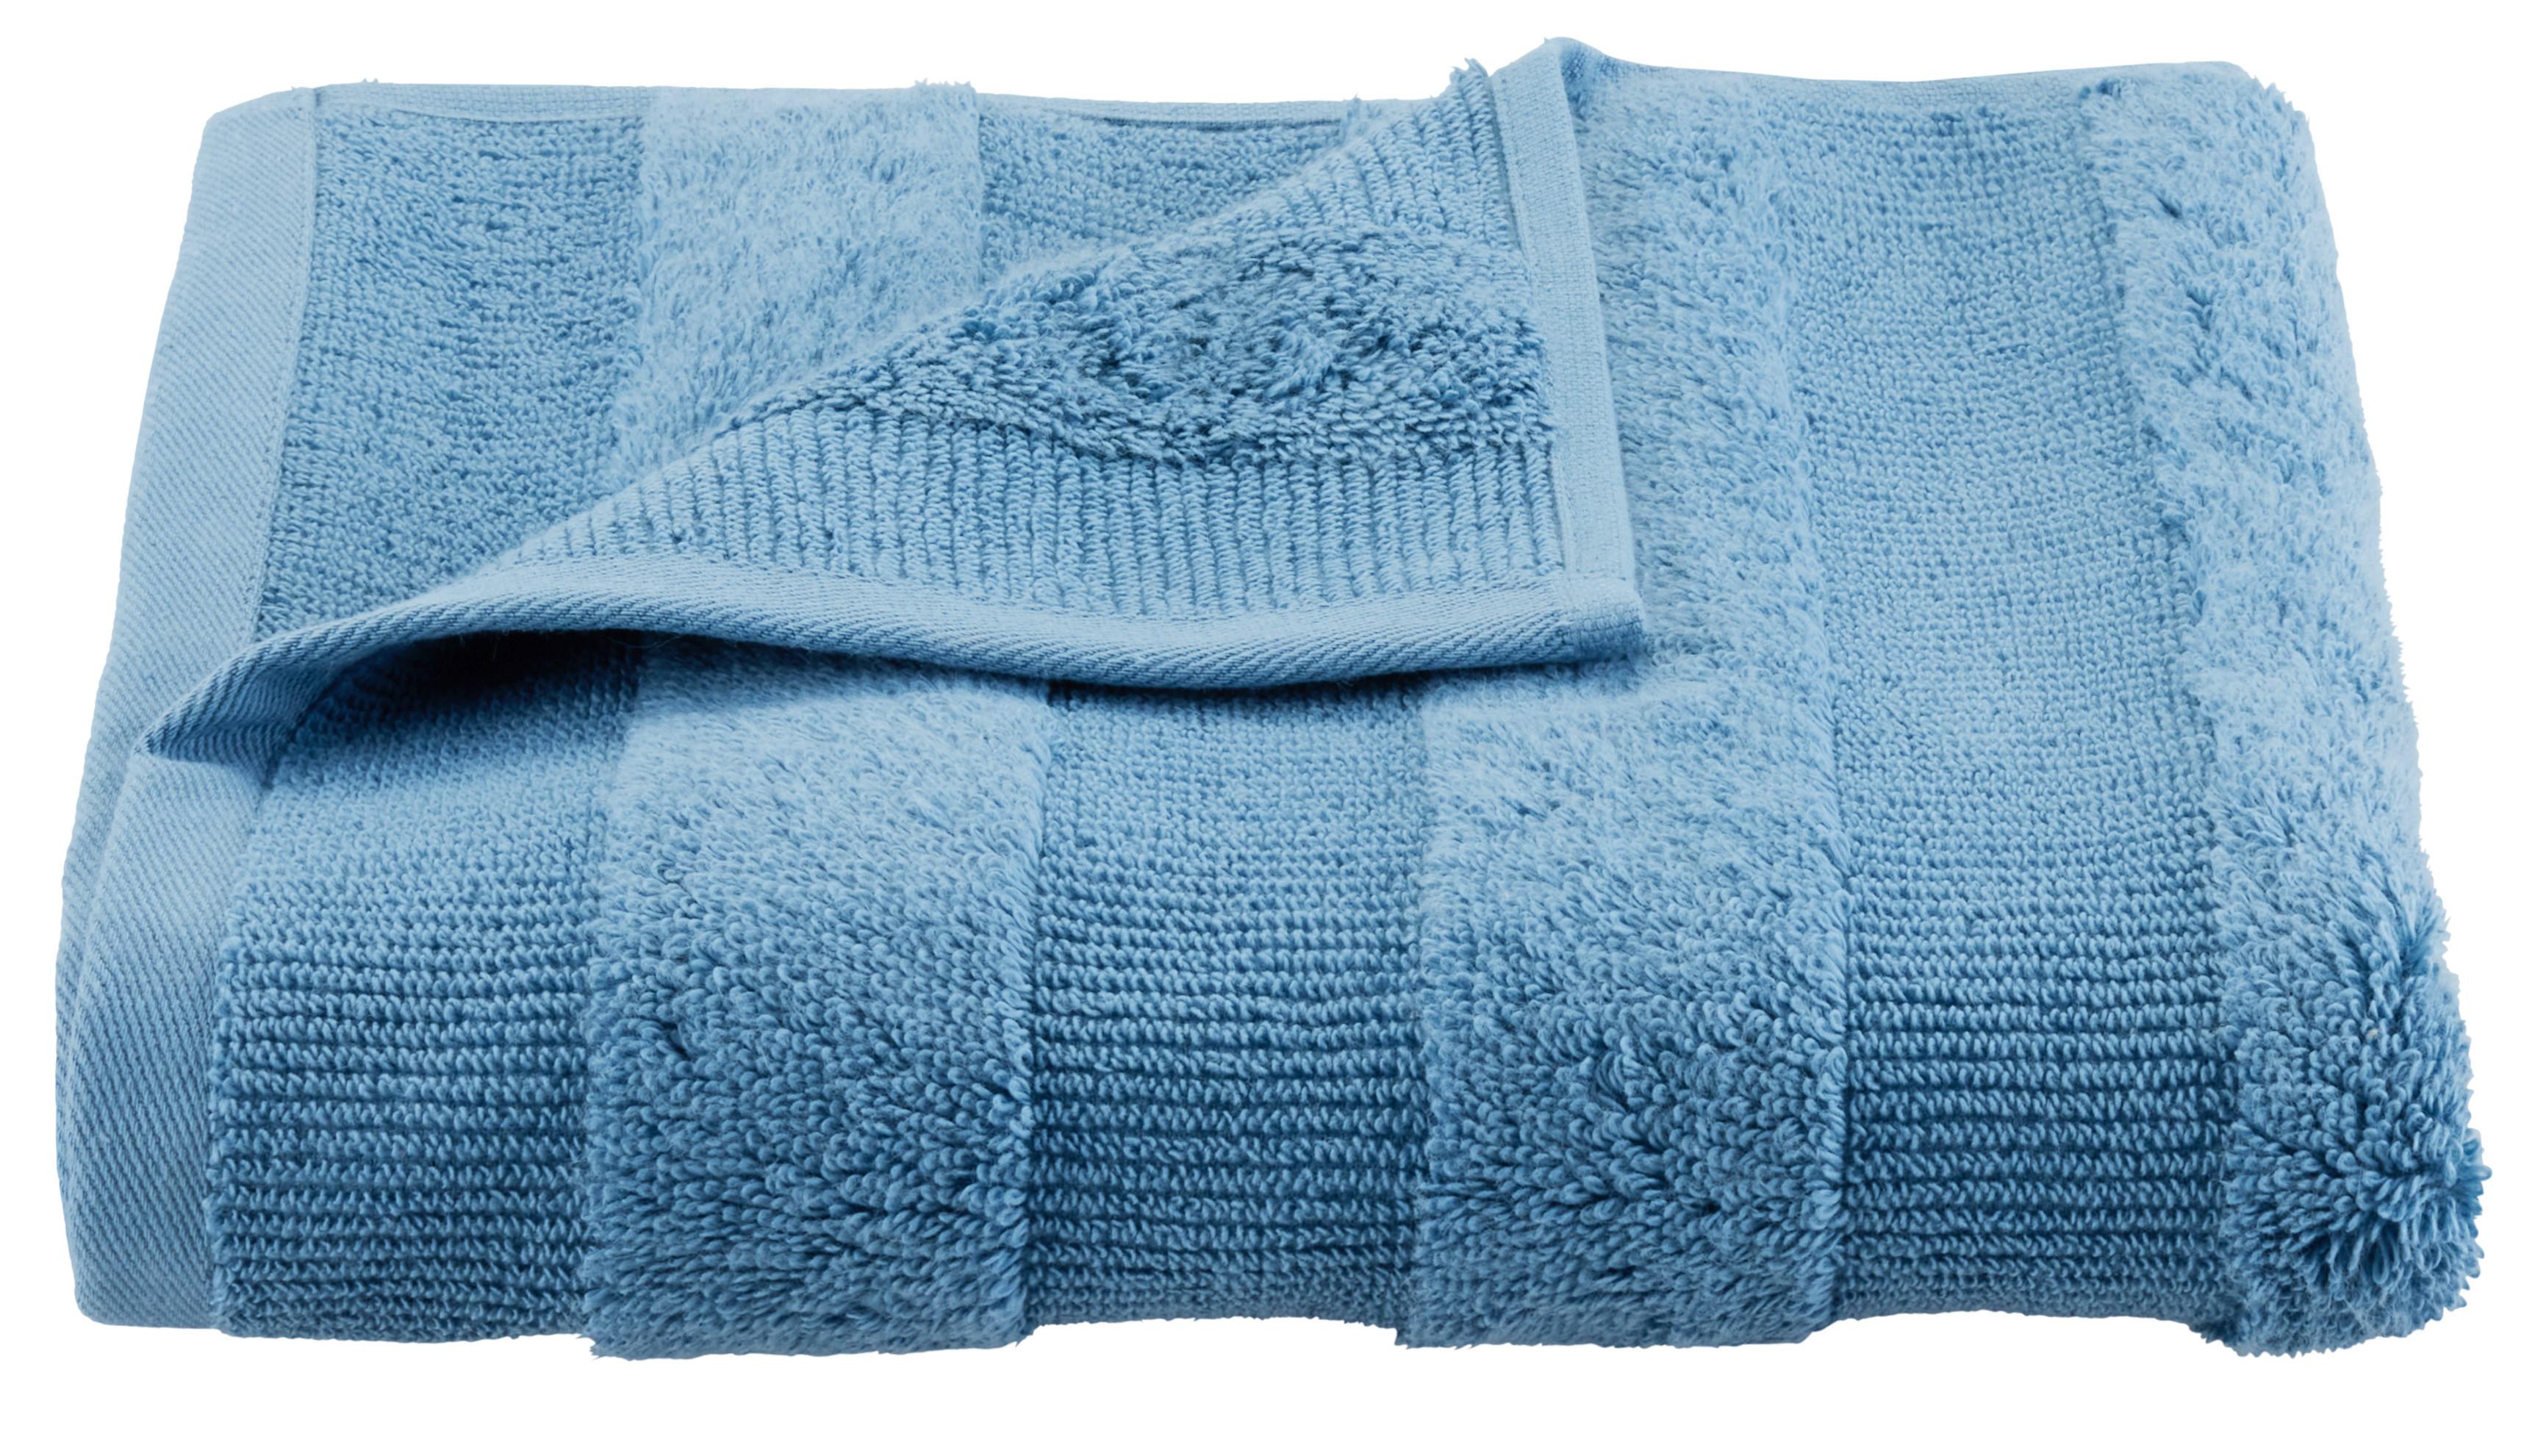 Kéztörlő Chris - Kék, Textil (50/100cm) - Premium Living